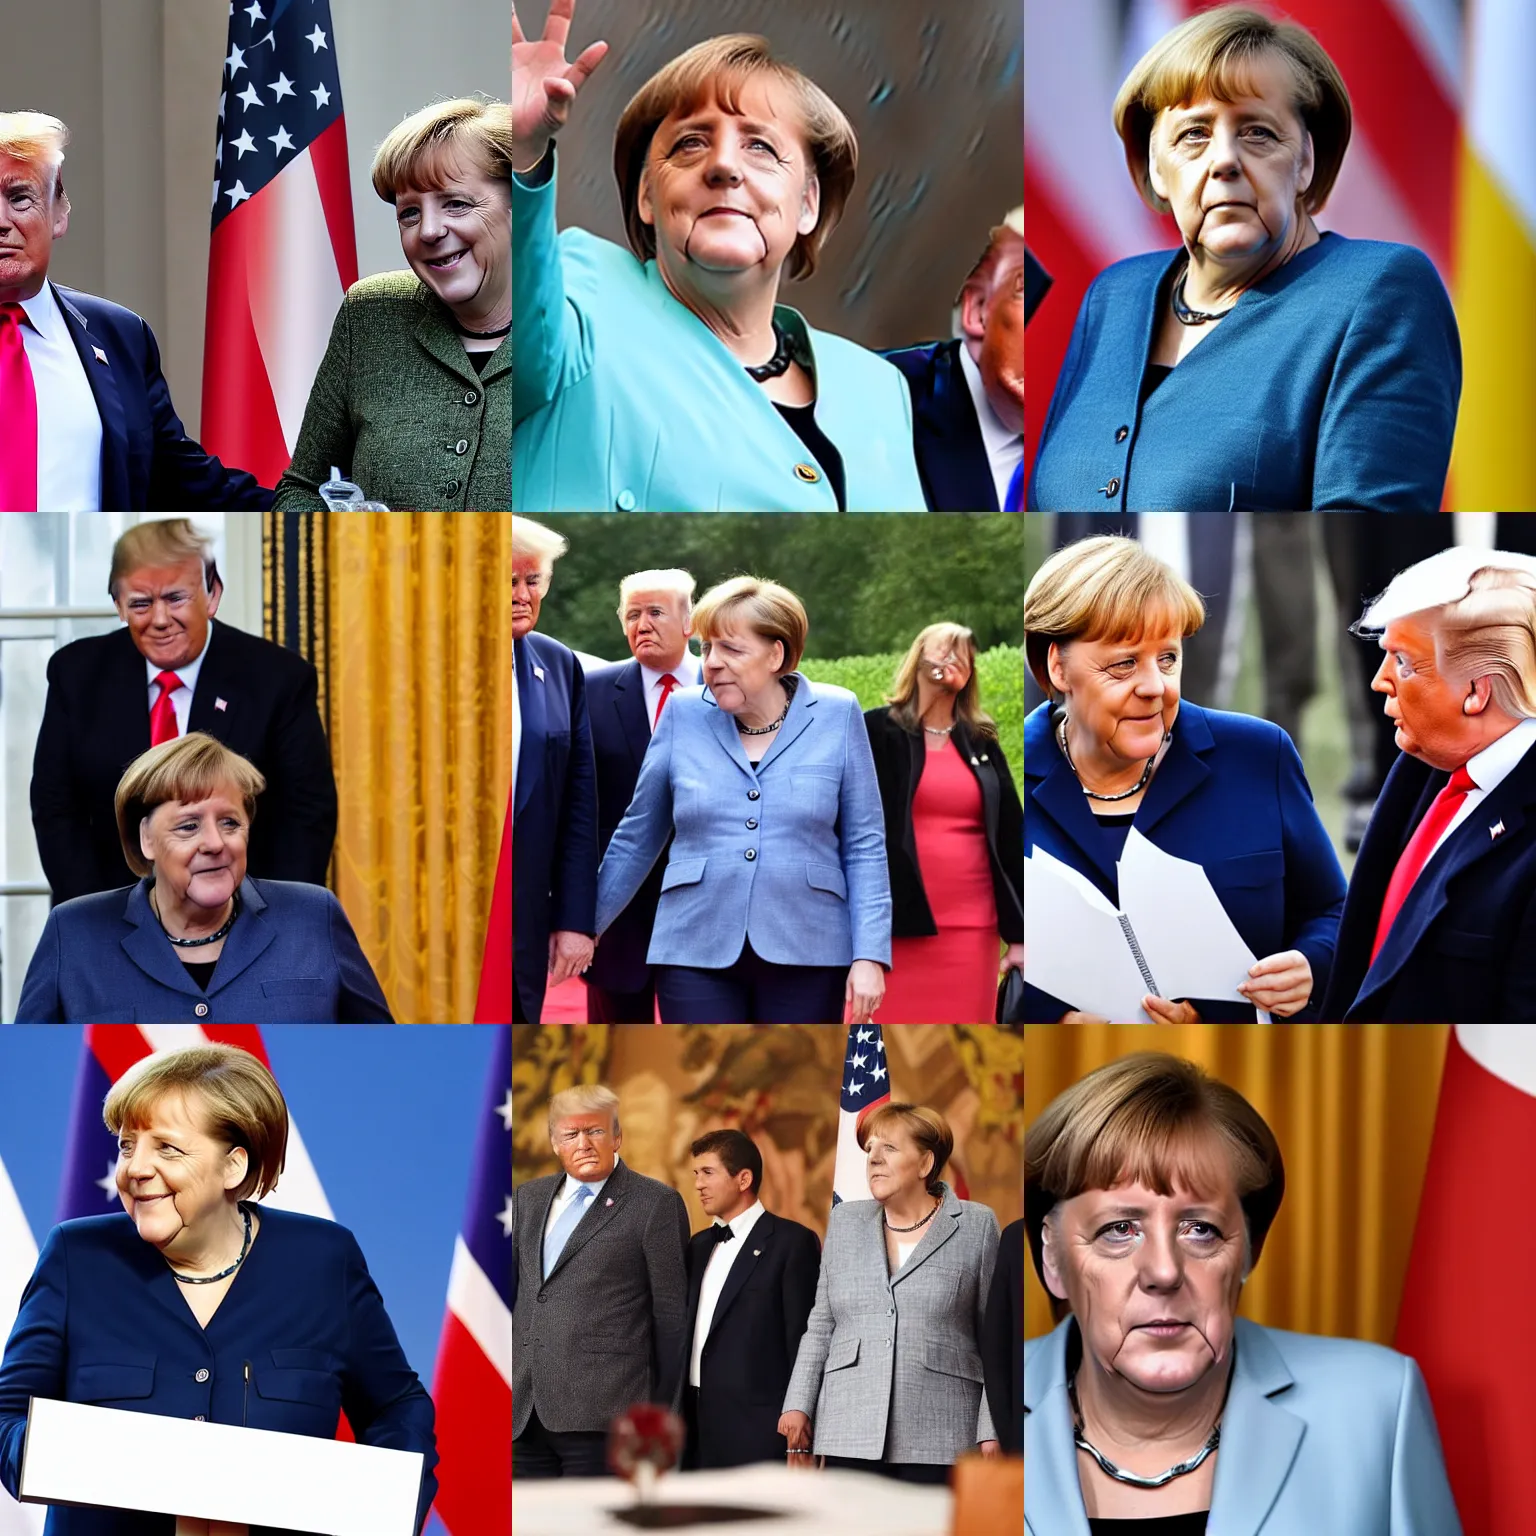 Prompt: Angela Merkel as first lady of trump